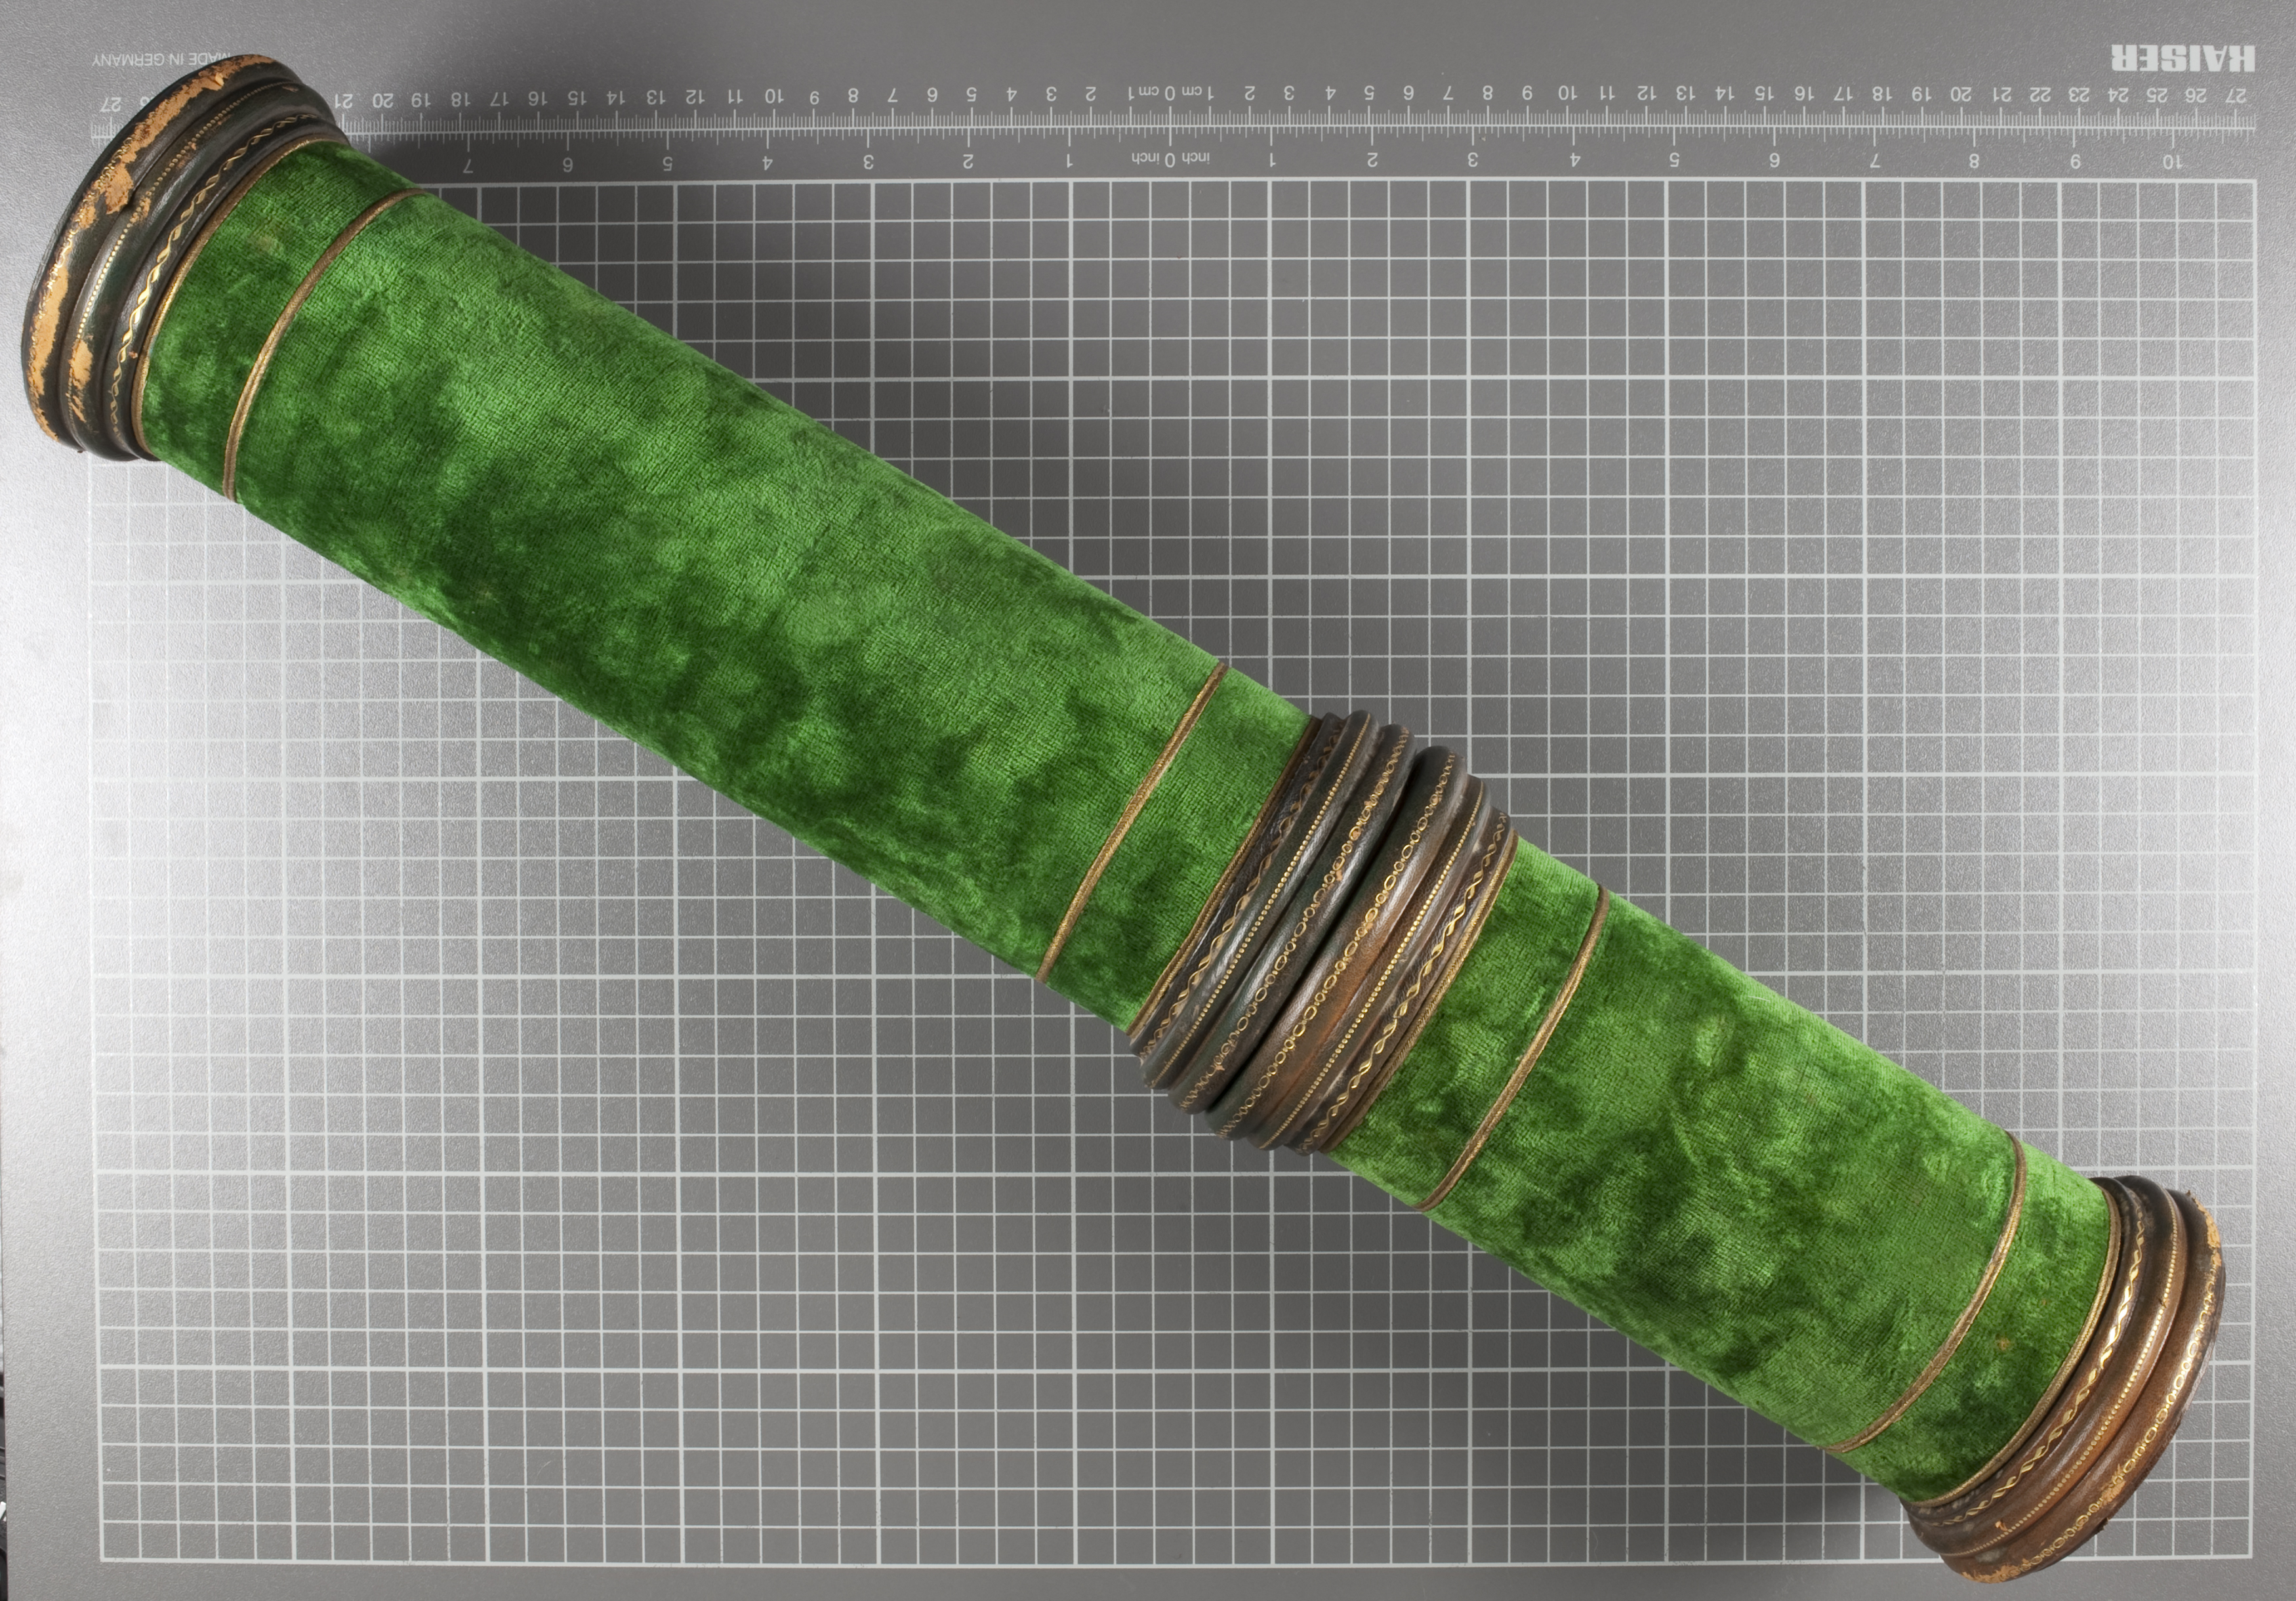 A green velvet scroll case